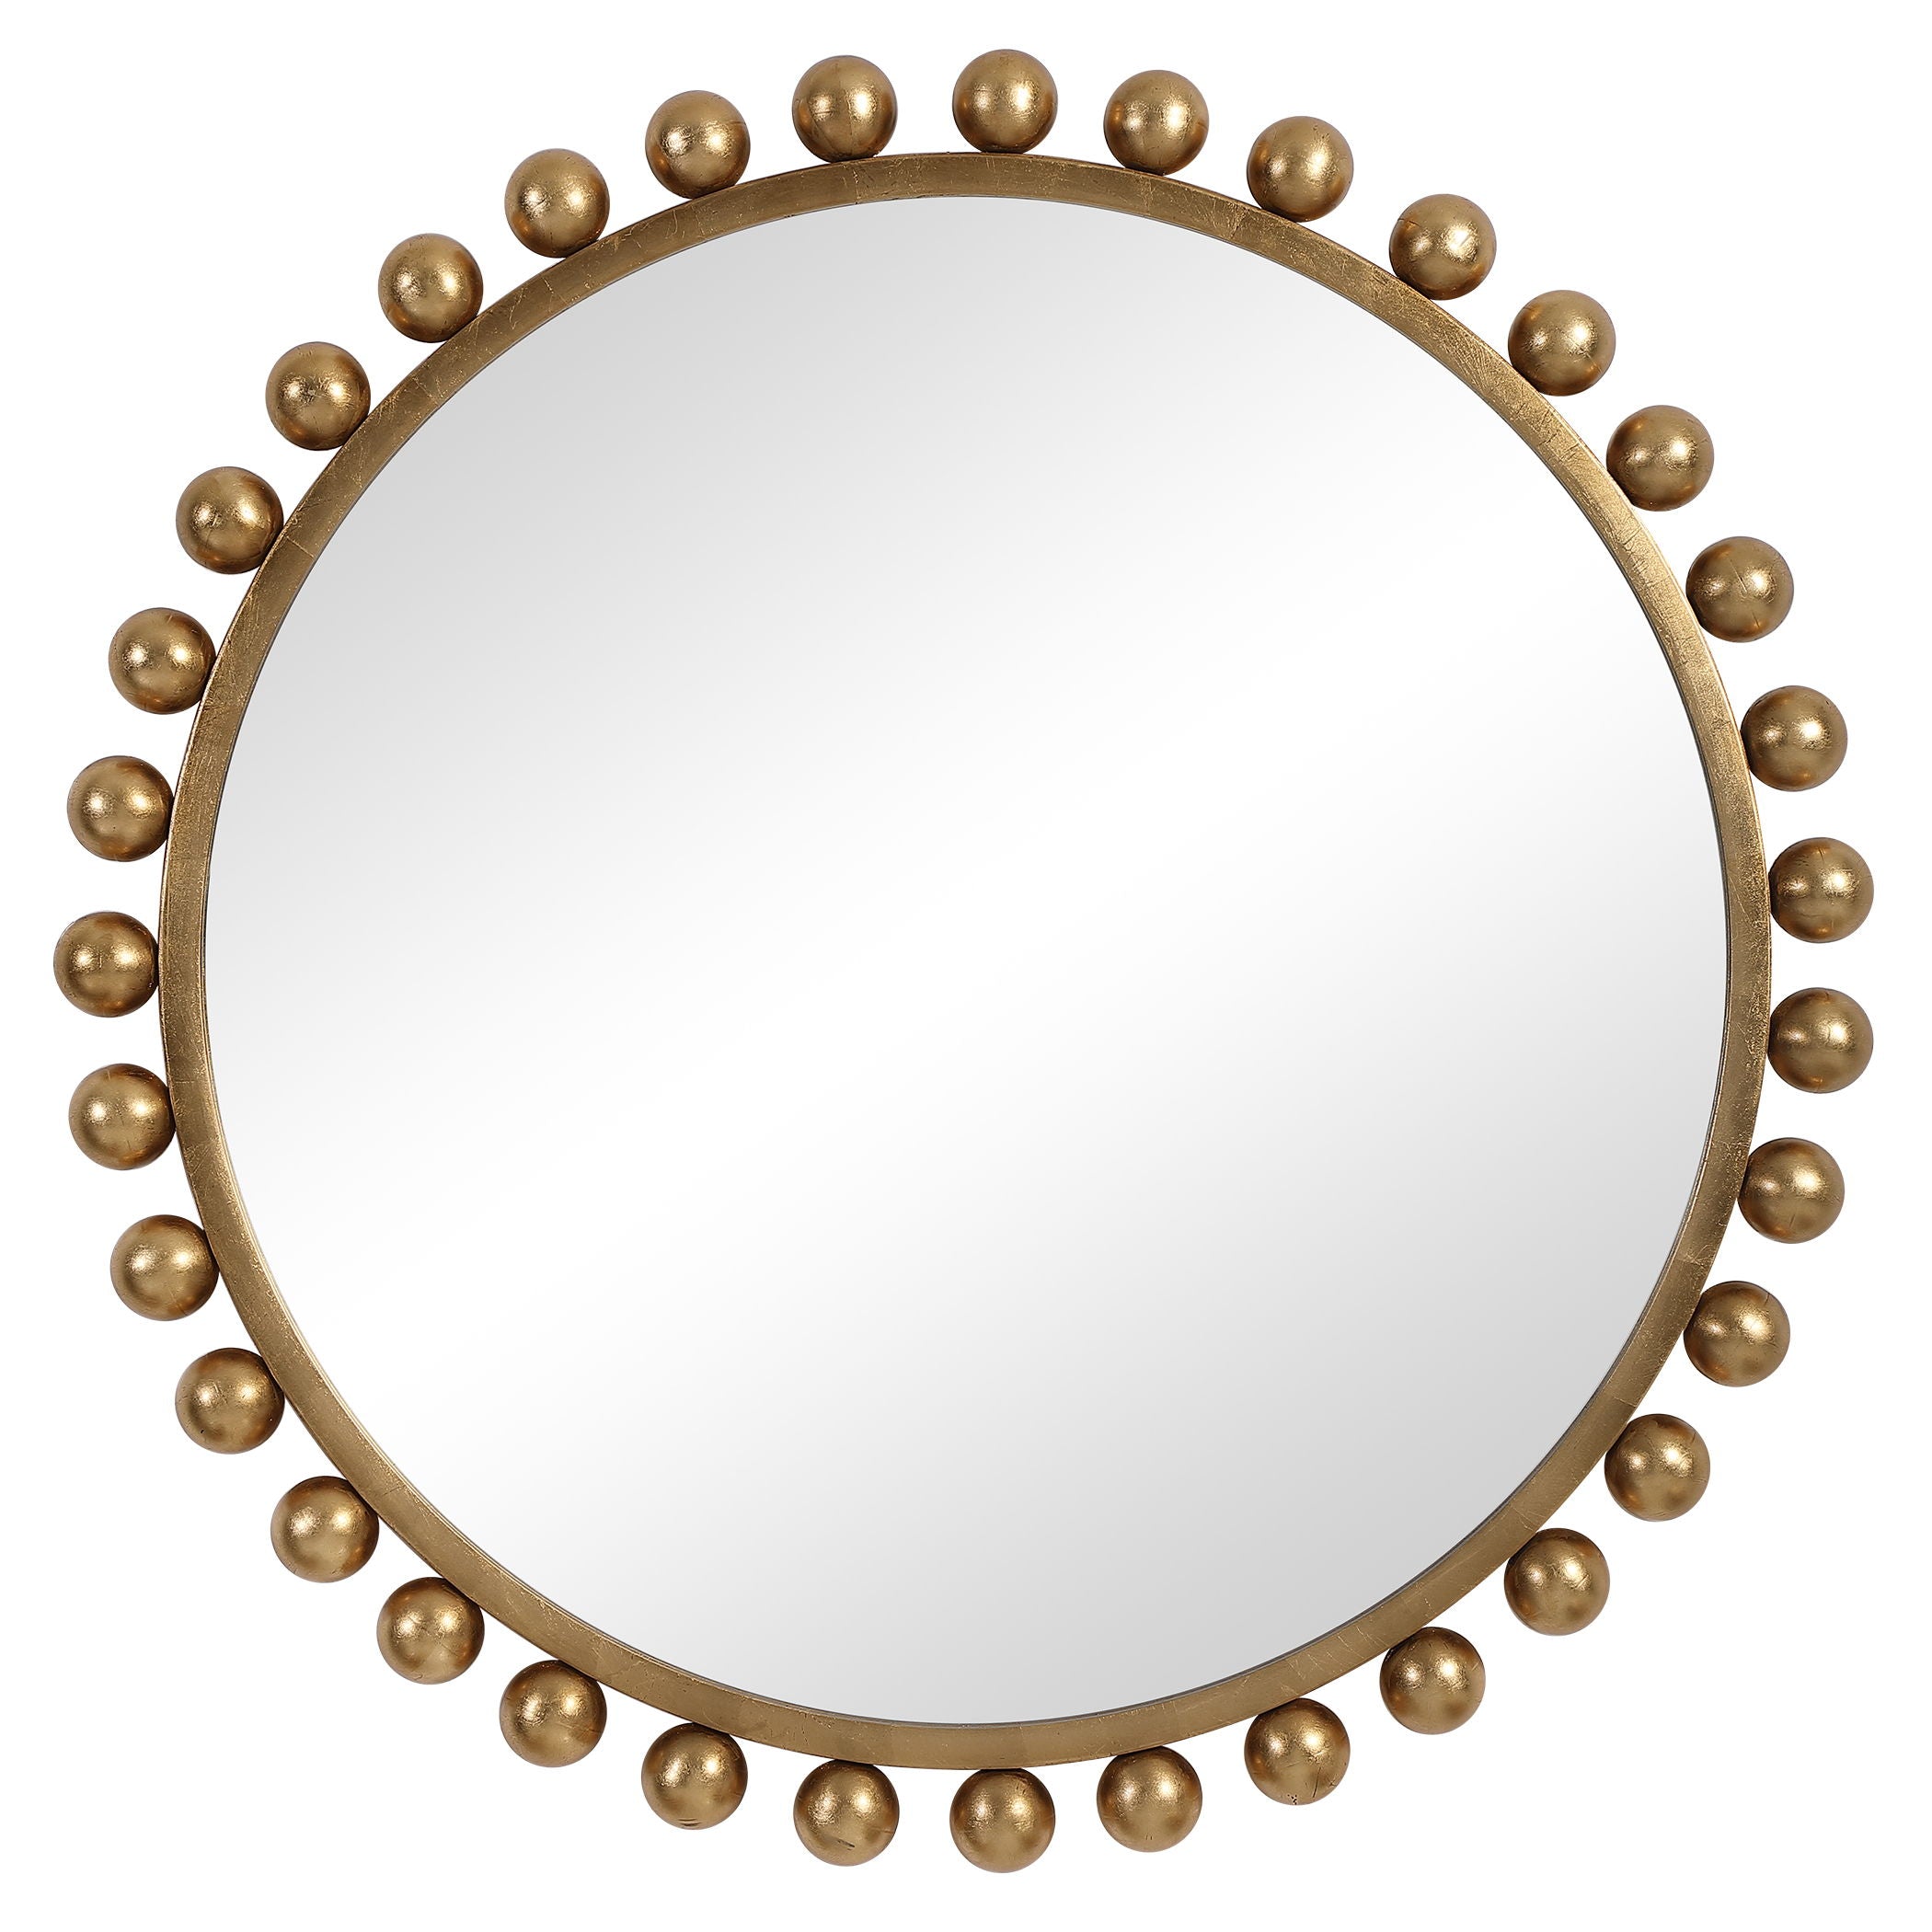 Cyra - Round Mirror - Gold